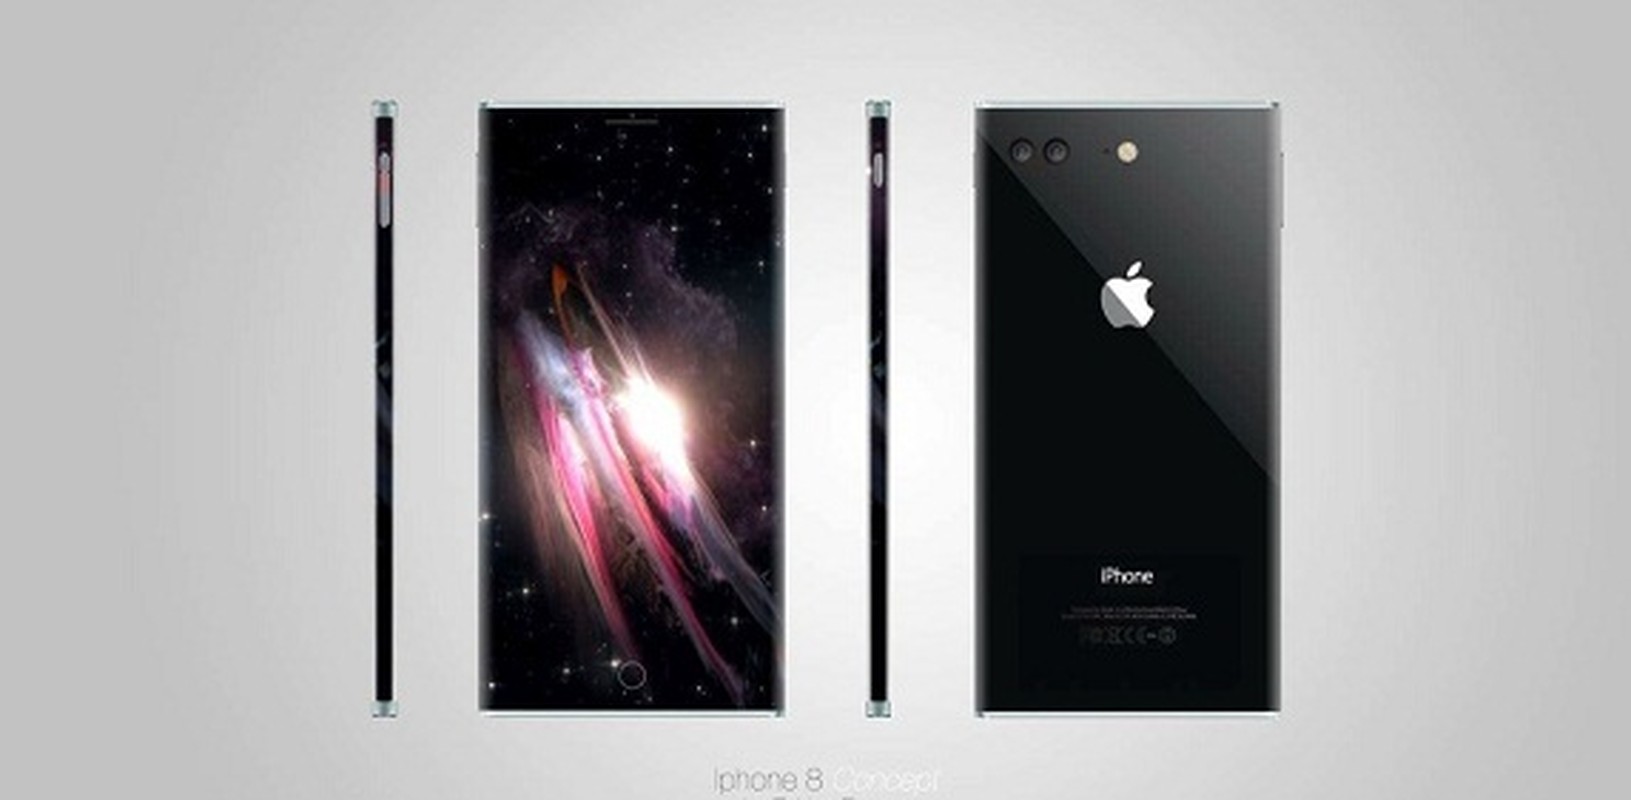 Ngam nhung mau iPhone 8 tuyet dep qua thong tin ro ri-Hinh-9